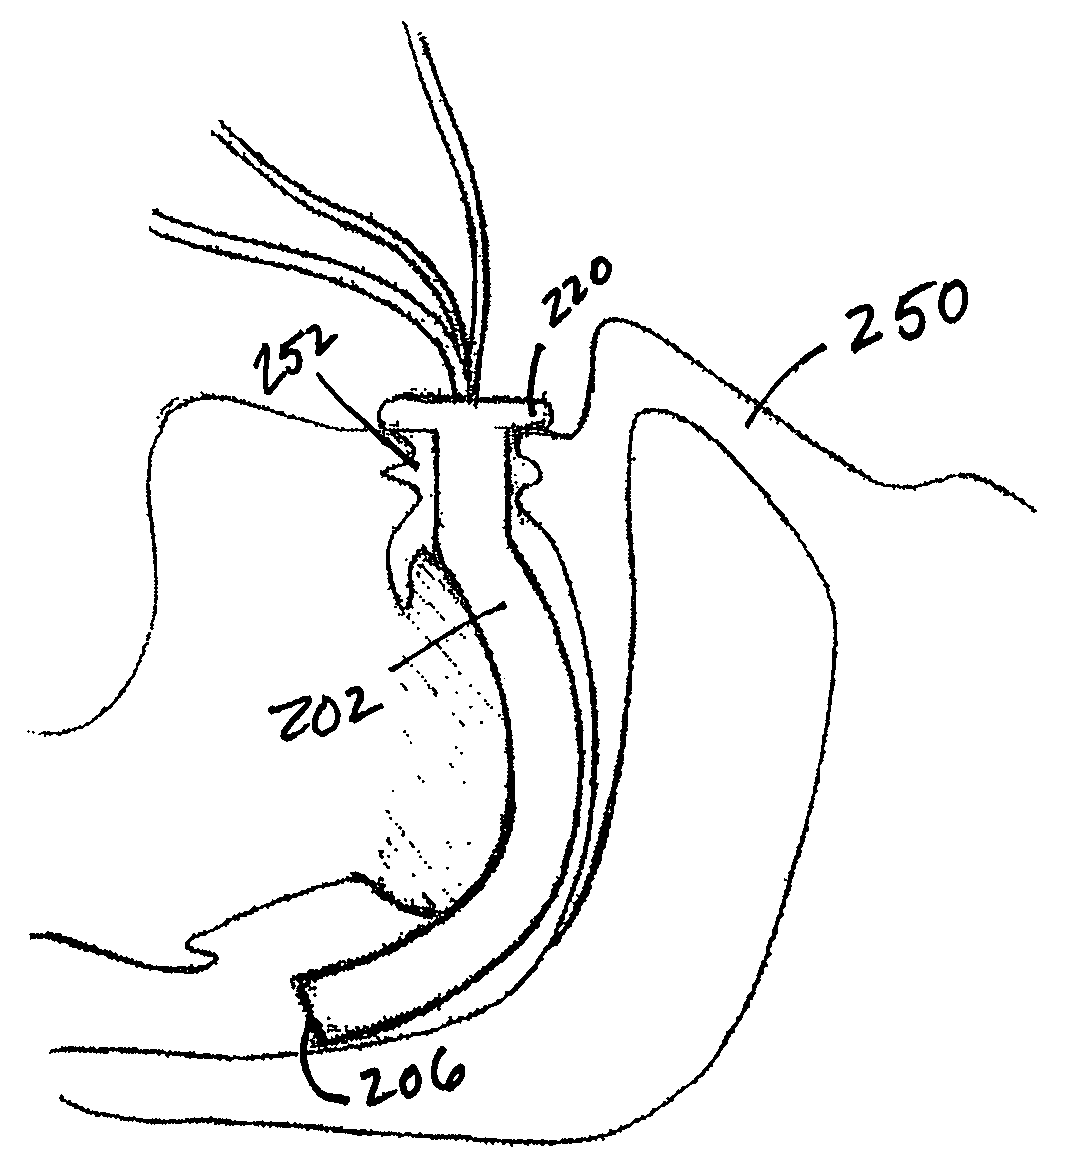 Oropharyngeal airway